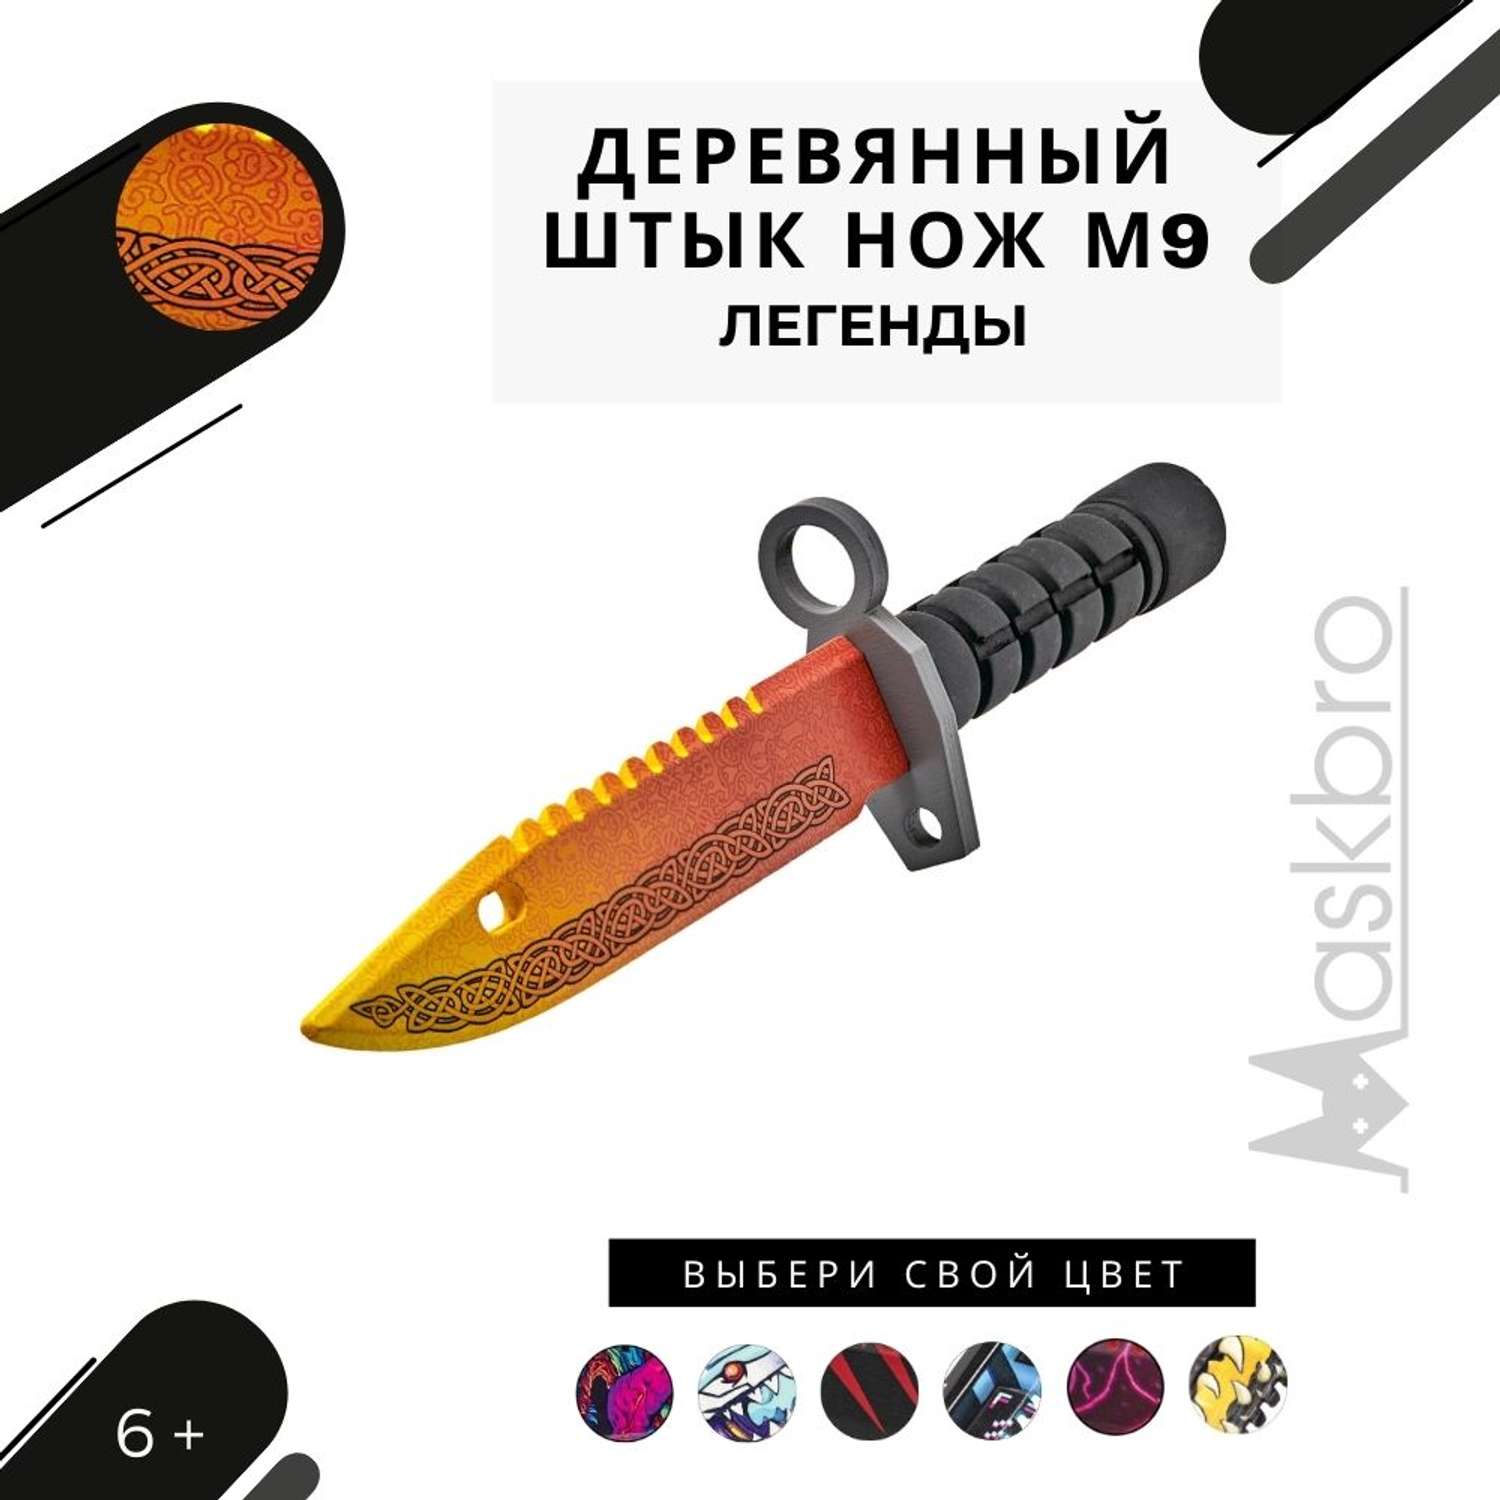 Штык-нож MASKBRO Байонет М-9 Легенды - фото 1